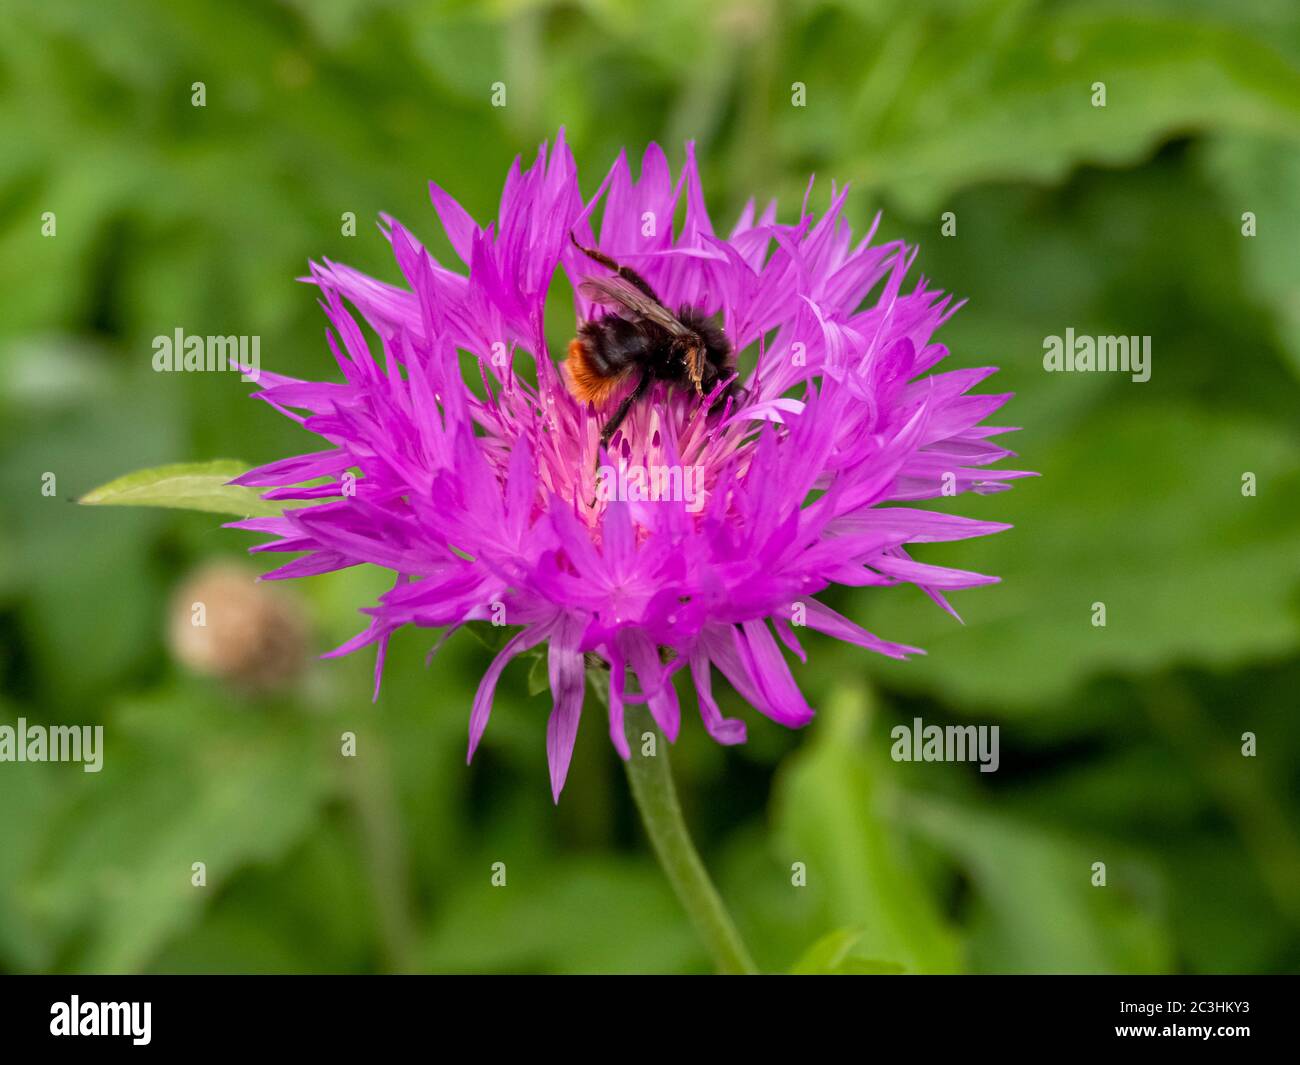 Primo piano di un fiore di mais viola in un giardino con un'ape da visita pollinator Foto Stock